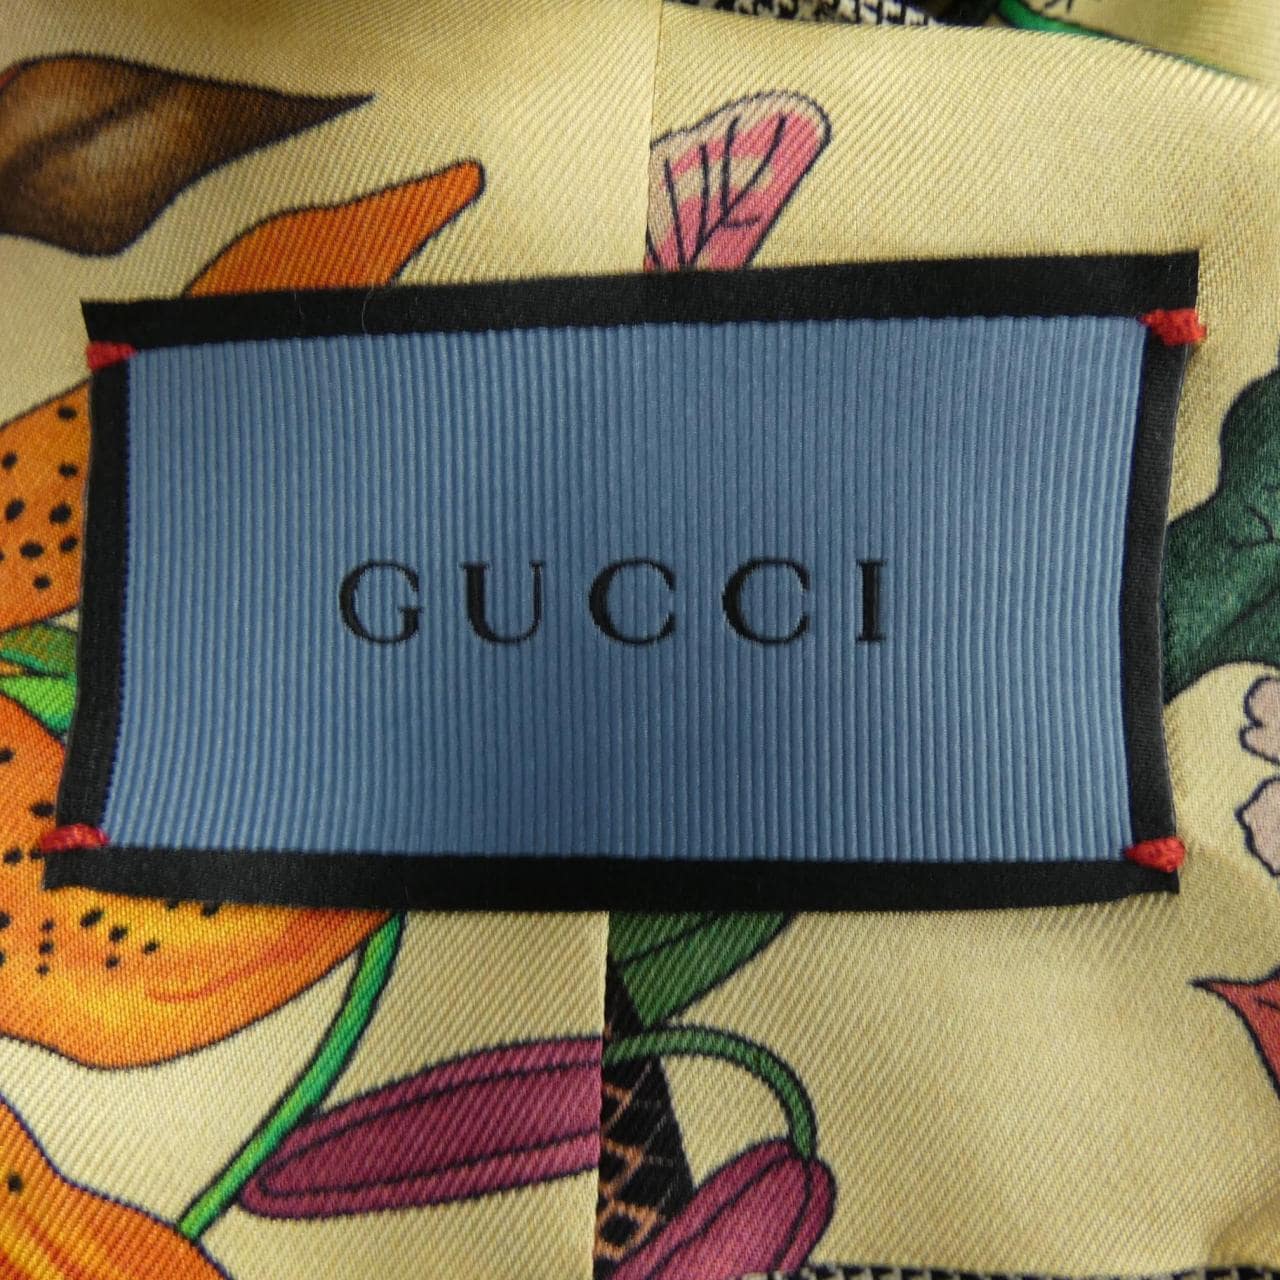 Gucci GUCCI vest